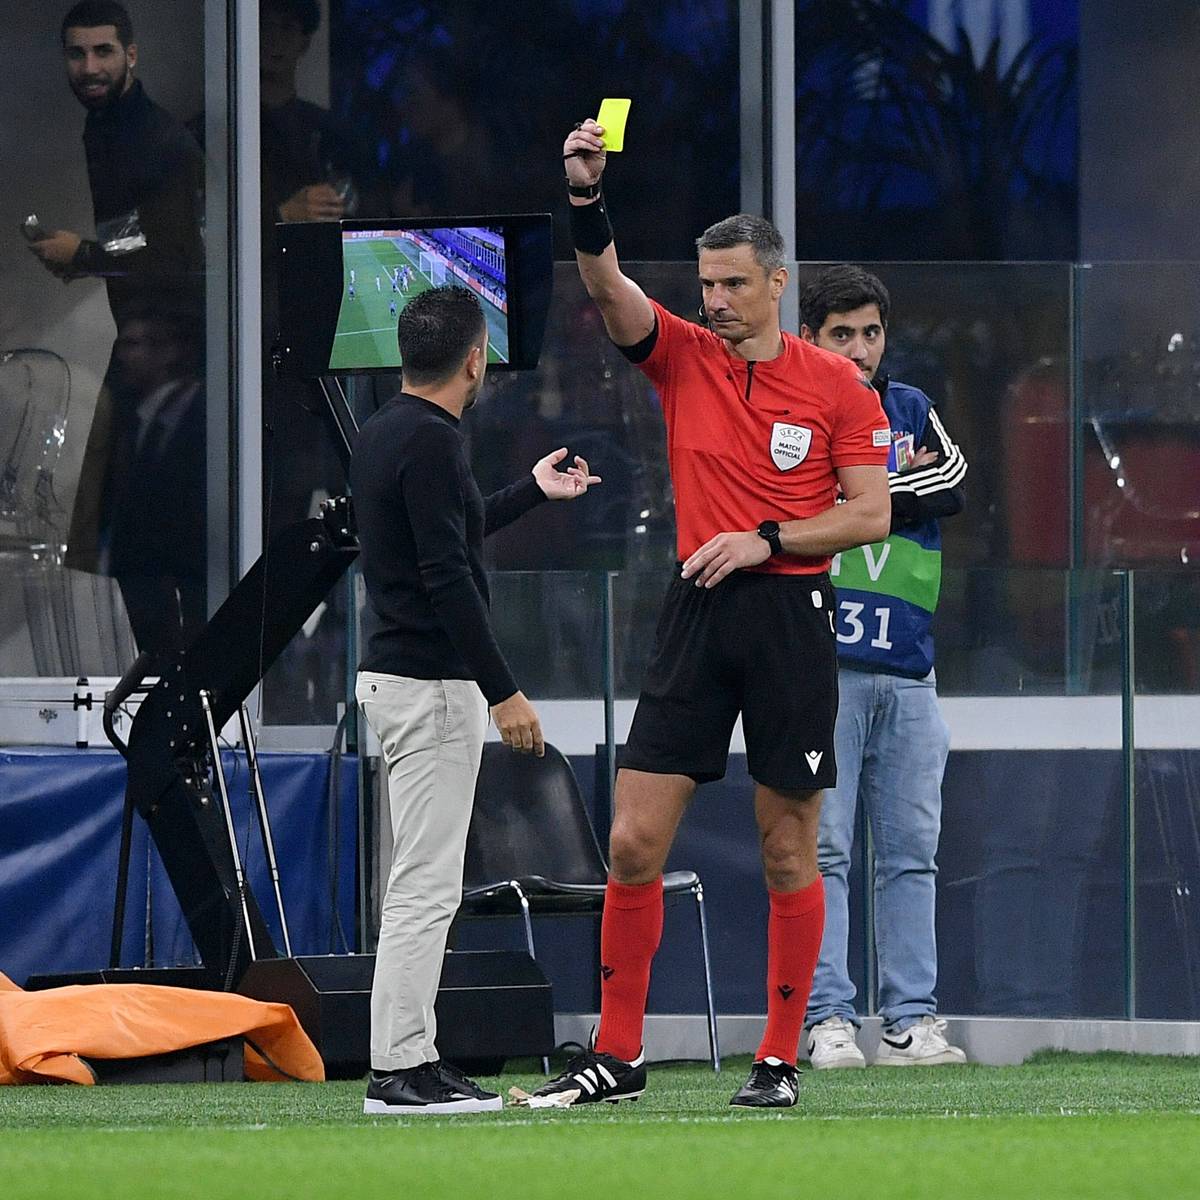 Bei der Auswärtsniederlage des FC Barcelona bei Inter Mailand kochen die Emotionen hoch. Auslöser sind zwei strittige Handspiel-Situationen. Barca-Coach Xavi tobt, der Klub will den Videoschiedsrichter sperren lassen.